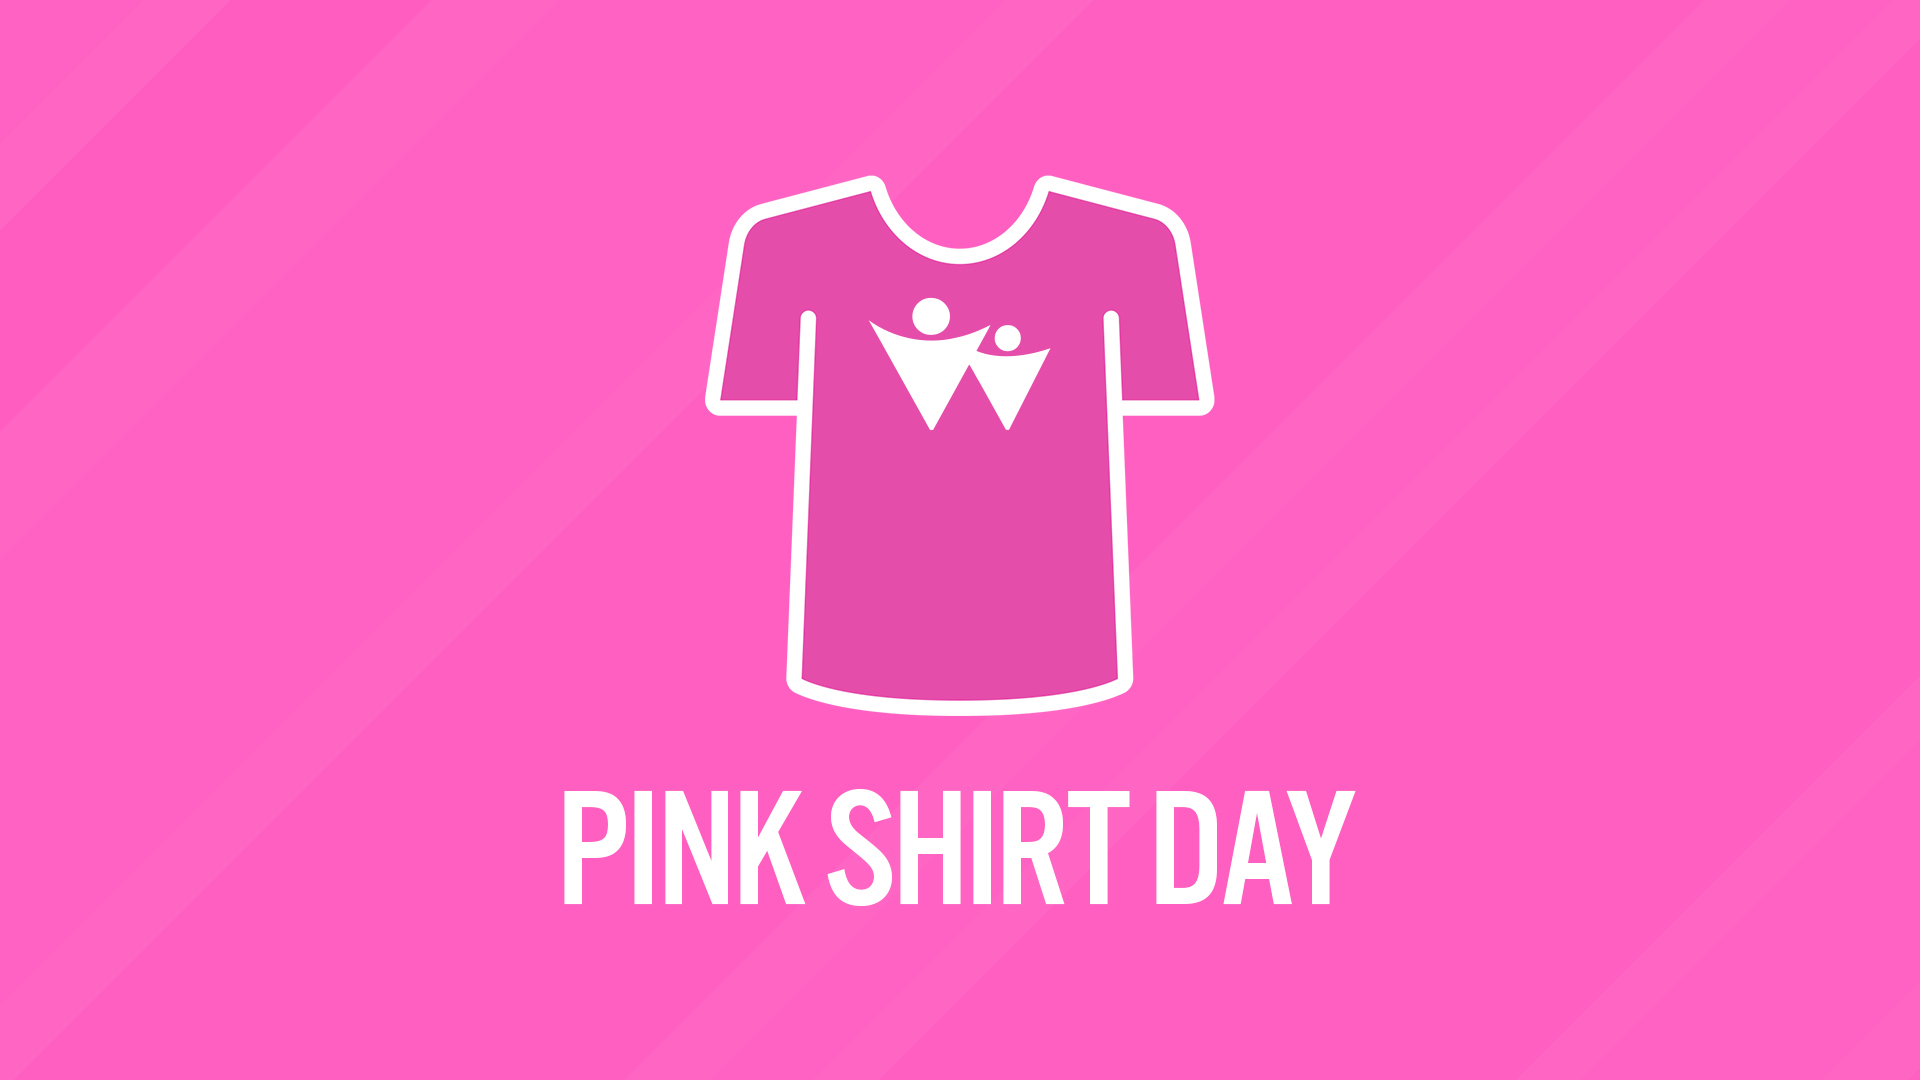 Ngày áo hồng là một ngày quan trọng để thể hiện sự hỗ trợ và đồng cảm với những người đang đối diện với bệnh ung thư. Hãy cùng chúng tôi lan tỏa thông điệp yêu thương và hy vọng bằng hình ảnh áo hồng đầy ý nghĩa. Hãy xem những bức hình này để cảm nhận được sự đoàn kết và sức mạnh từ những người yêu thương xung quanh chúng ta.